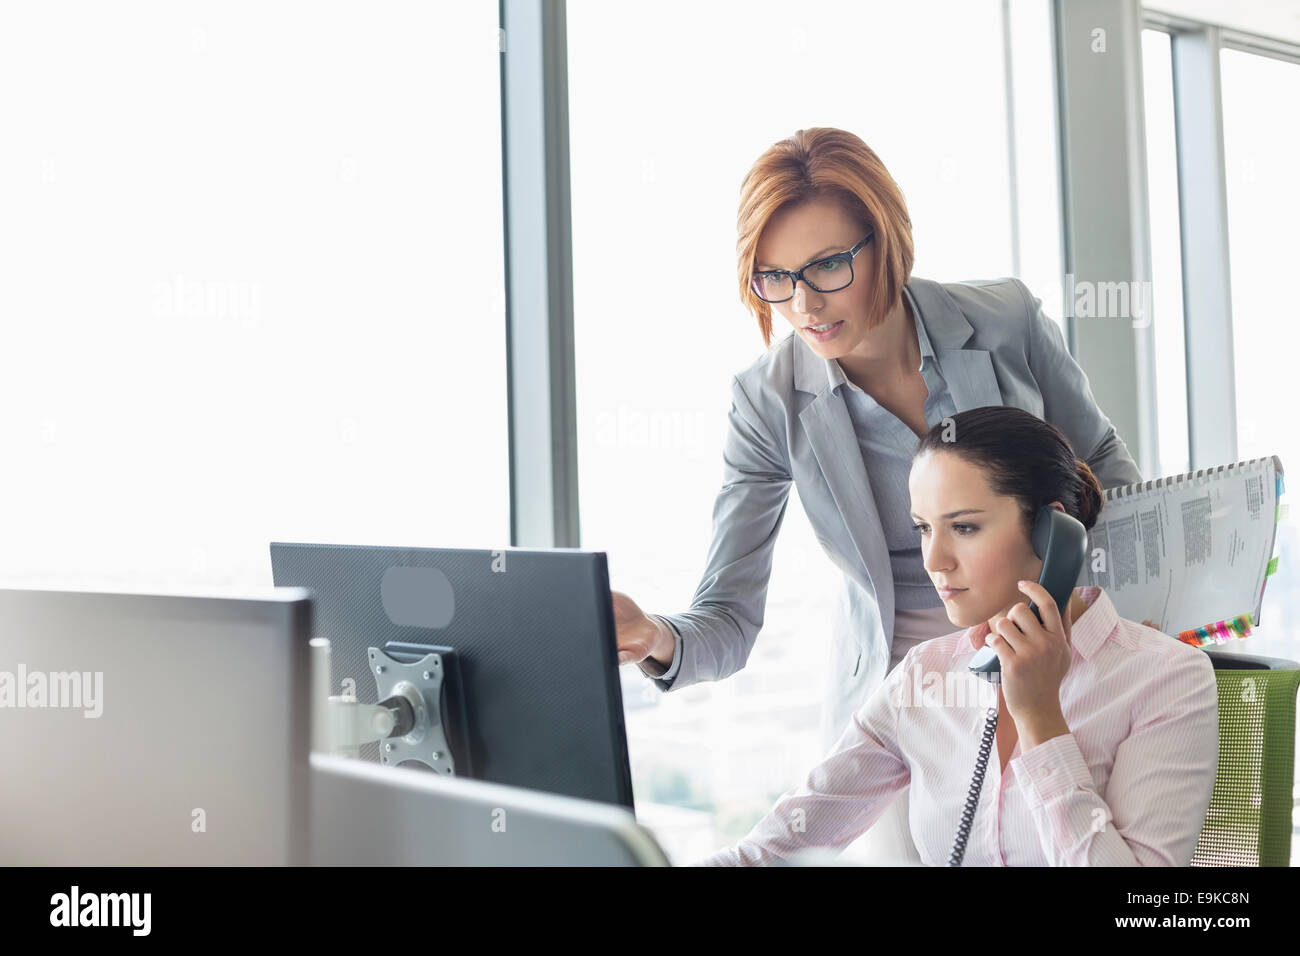 Junge Geschäftsfrau mit Festnetz-Telefon während Kollege zeigte auf Computer-Monitor im Büro Stockfoto